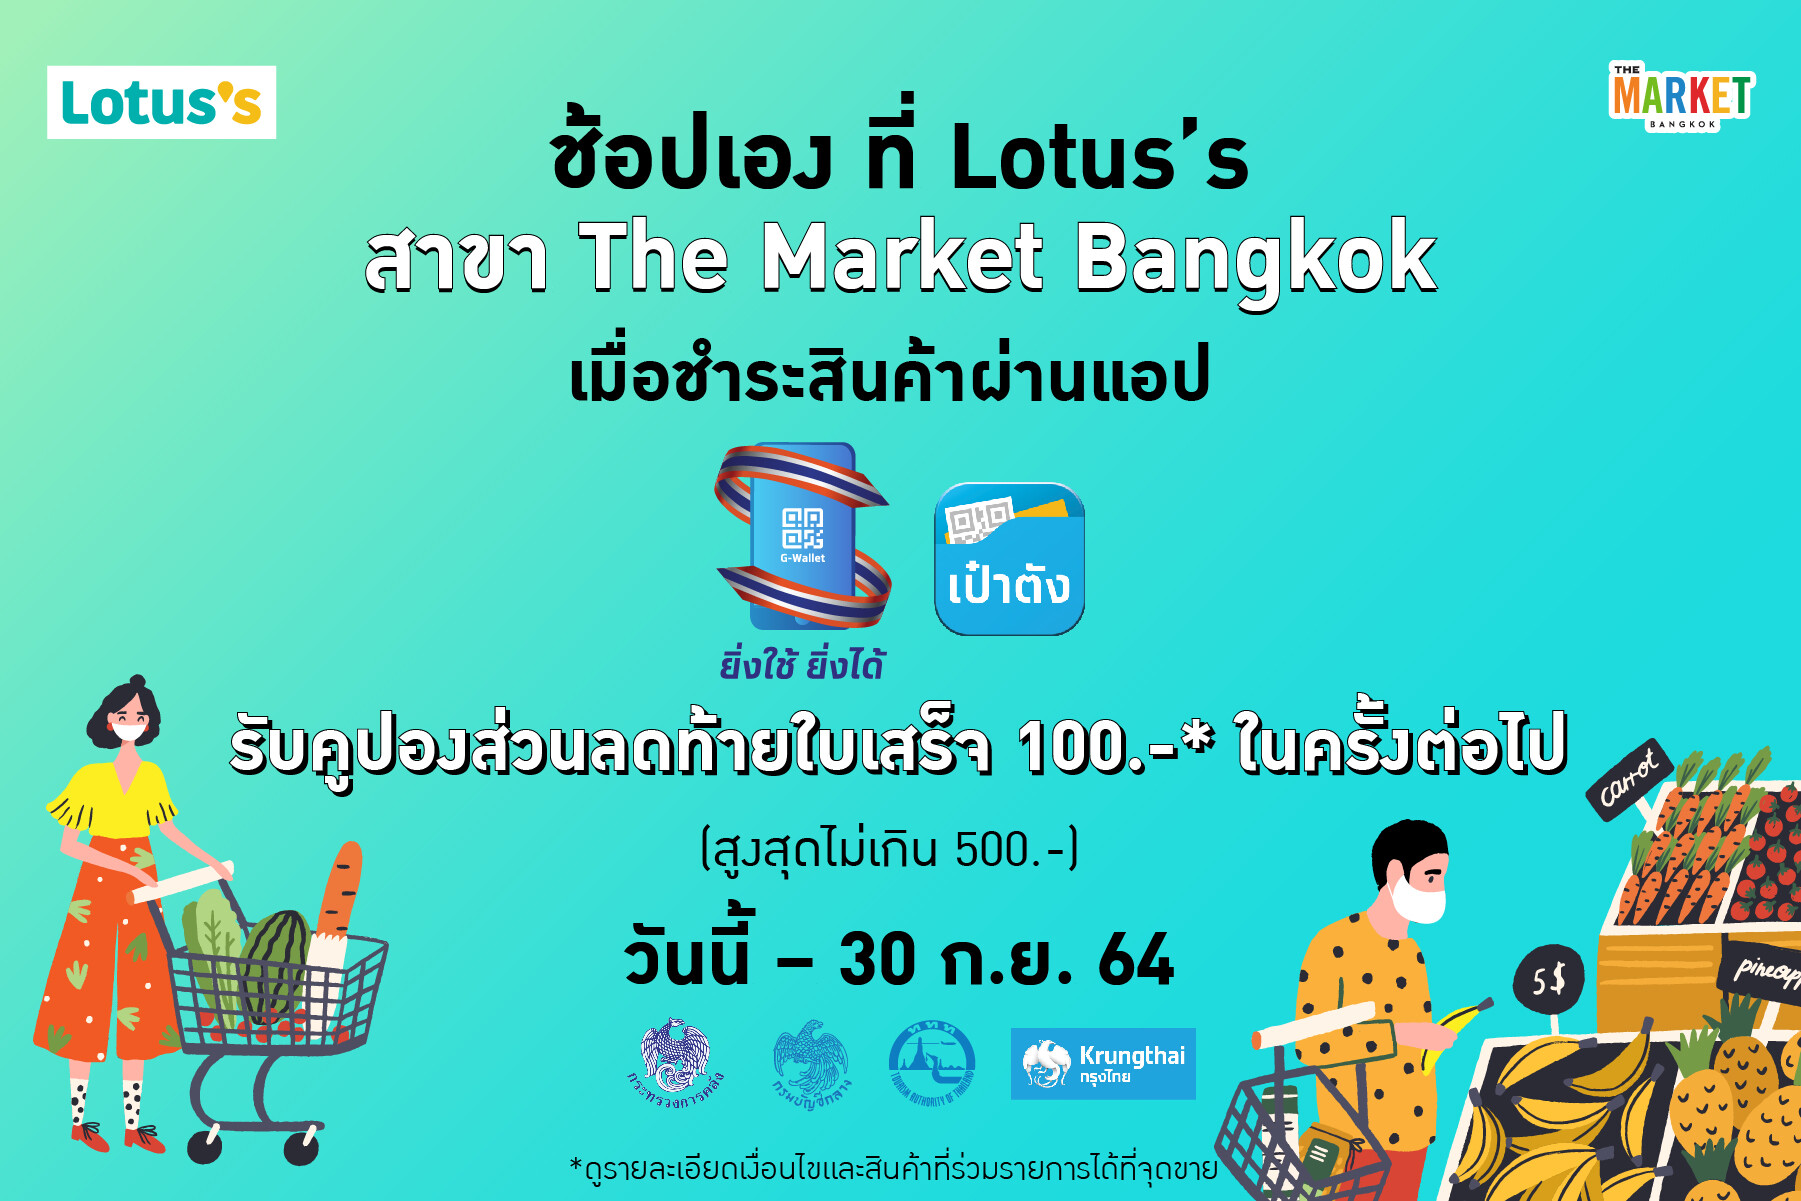 ยิ่งช้อป ยิ่งประหยัดที่ Lotus's สาขา The Market Bangkok  ชวนลูกค้าร่วมรับกับโปรฯ พิเศษ มากมาย วันนี้ - 30 ก.ย. 64